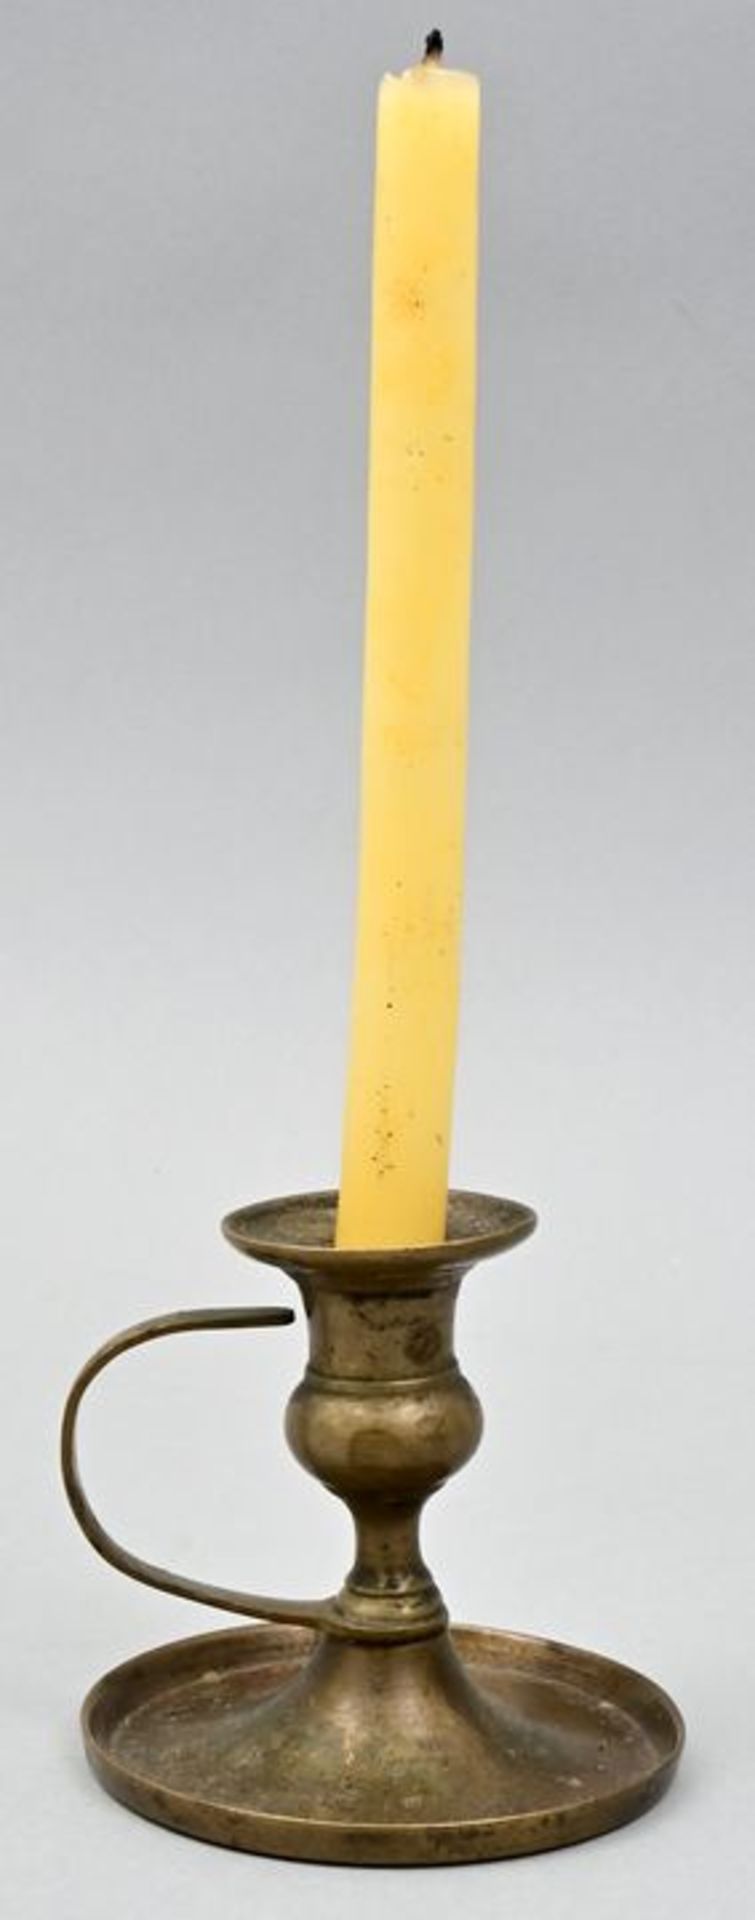 kl. Messinghandleuchter / Brass candle holder